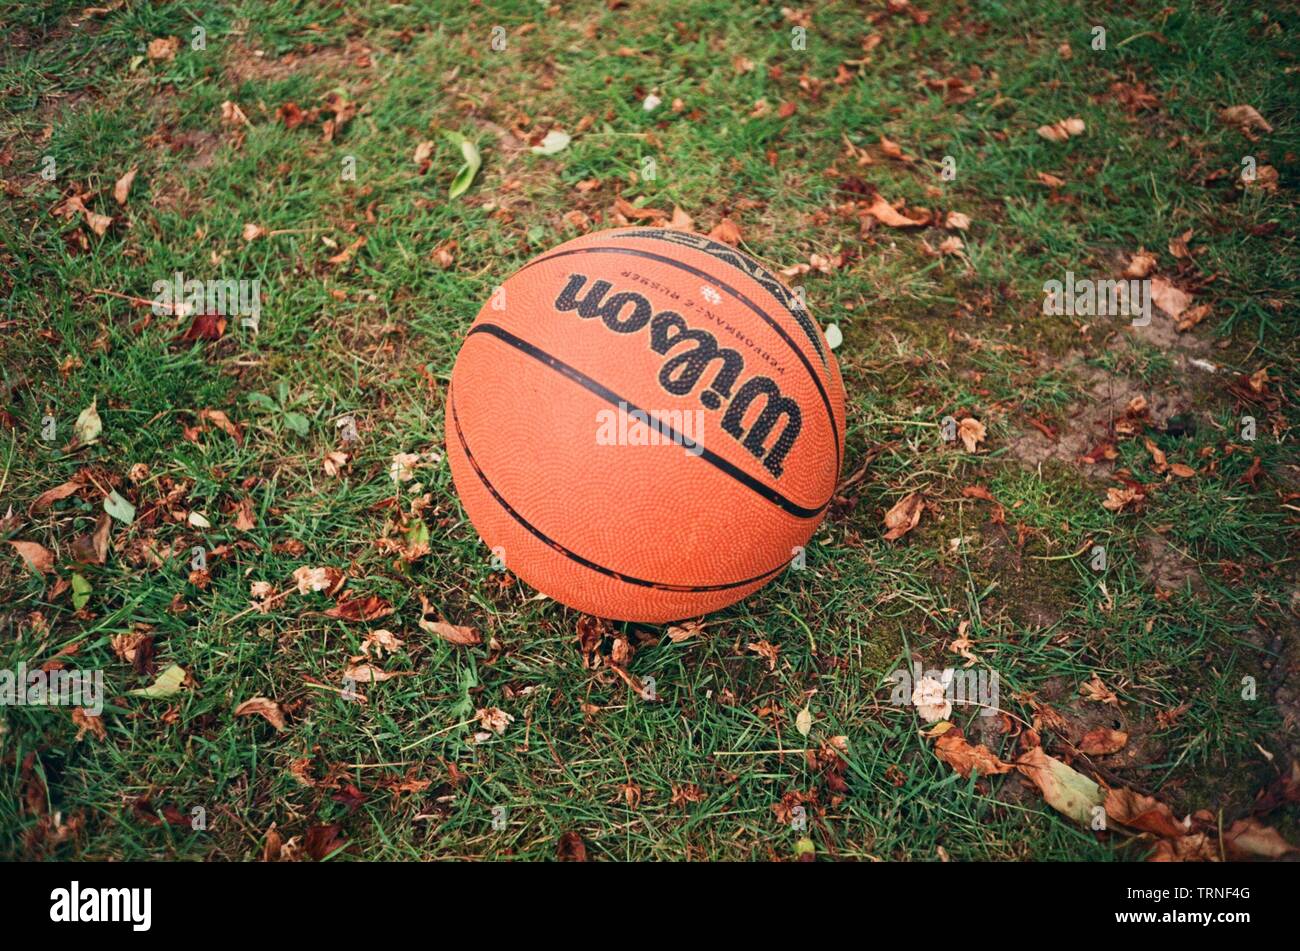 Basketball Wilson à l'extérieur sur l'herbe, Medstead, Hampshire, Angleterre, Royaume-Uni. Banque D'Images